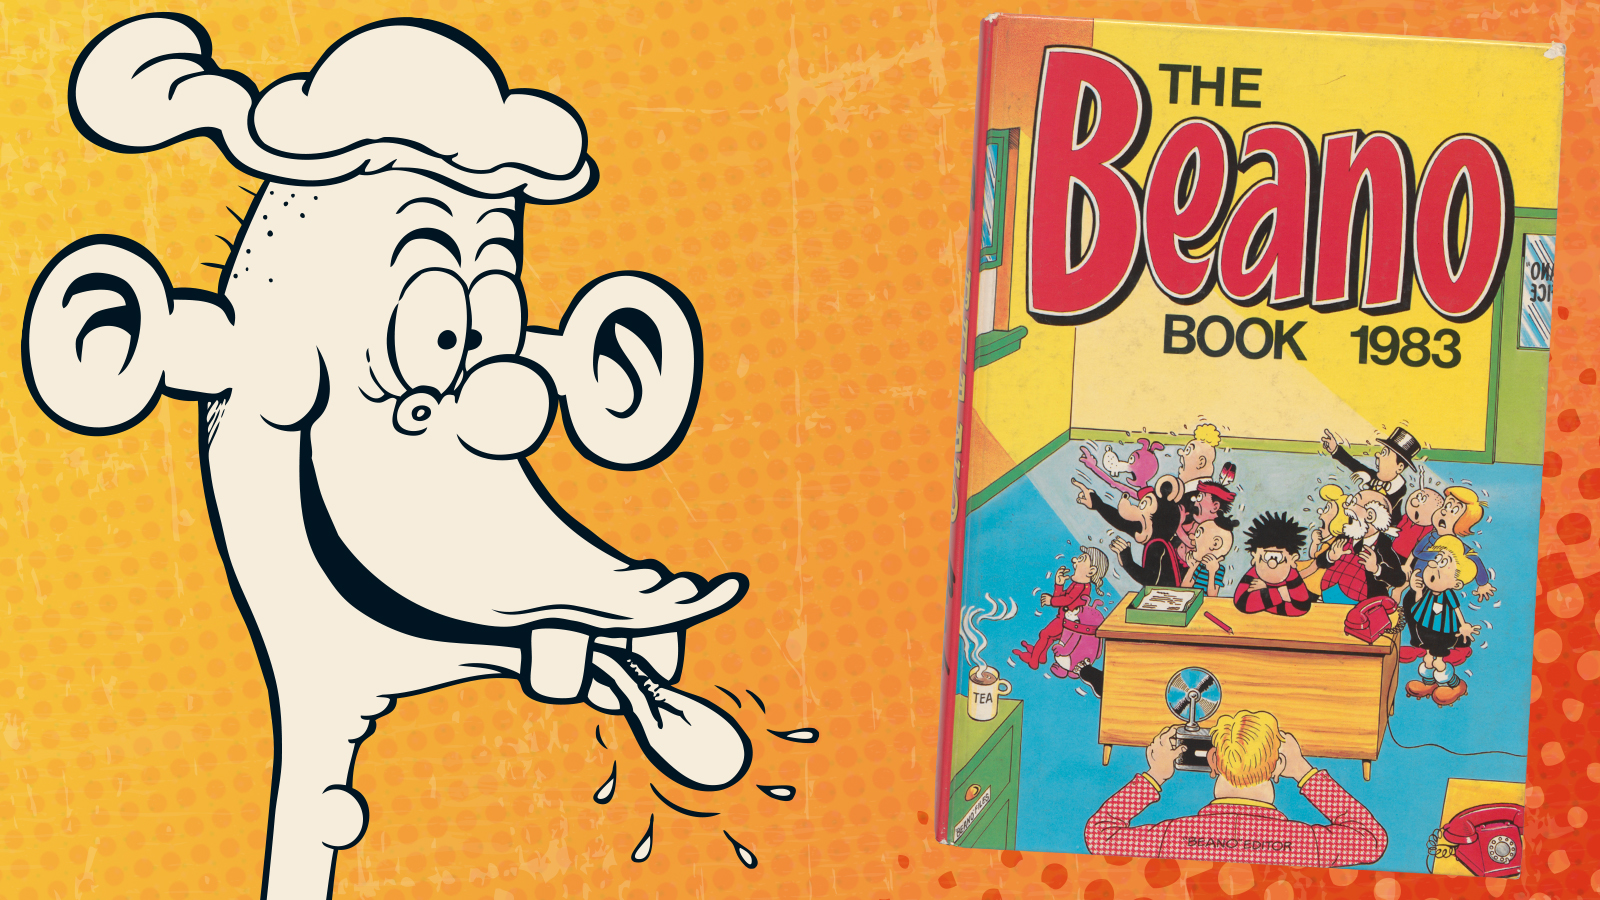 Beano Book 1983 Annual